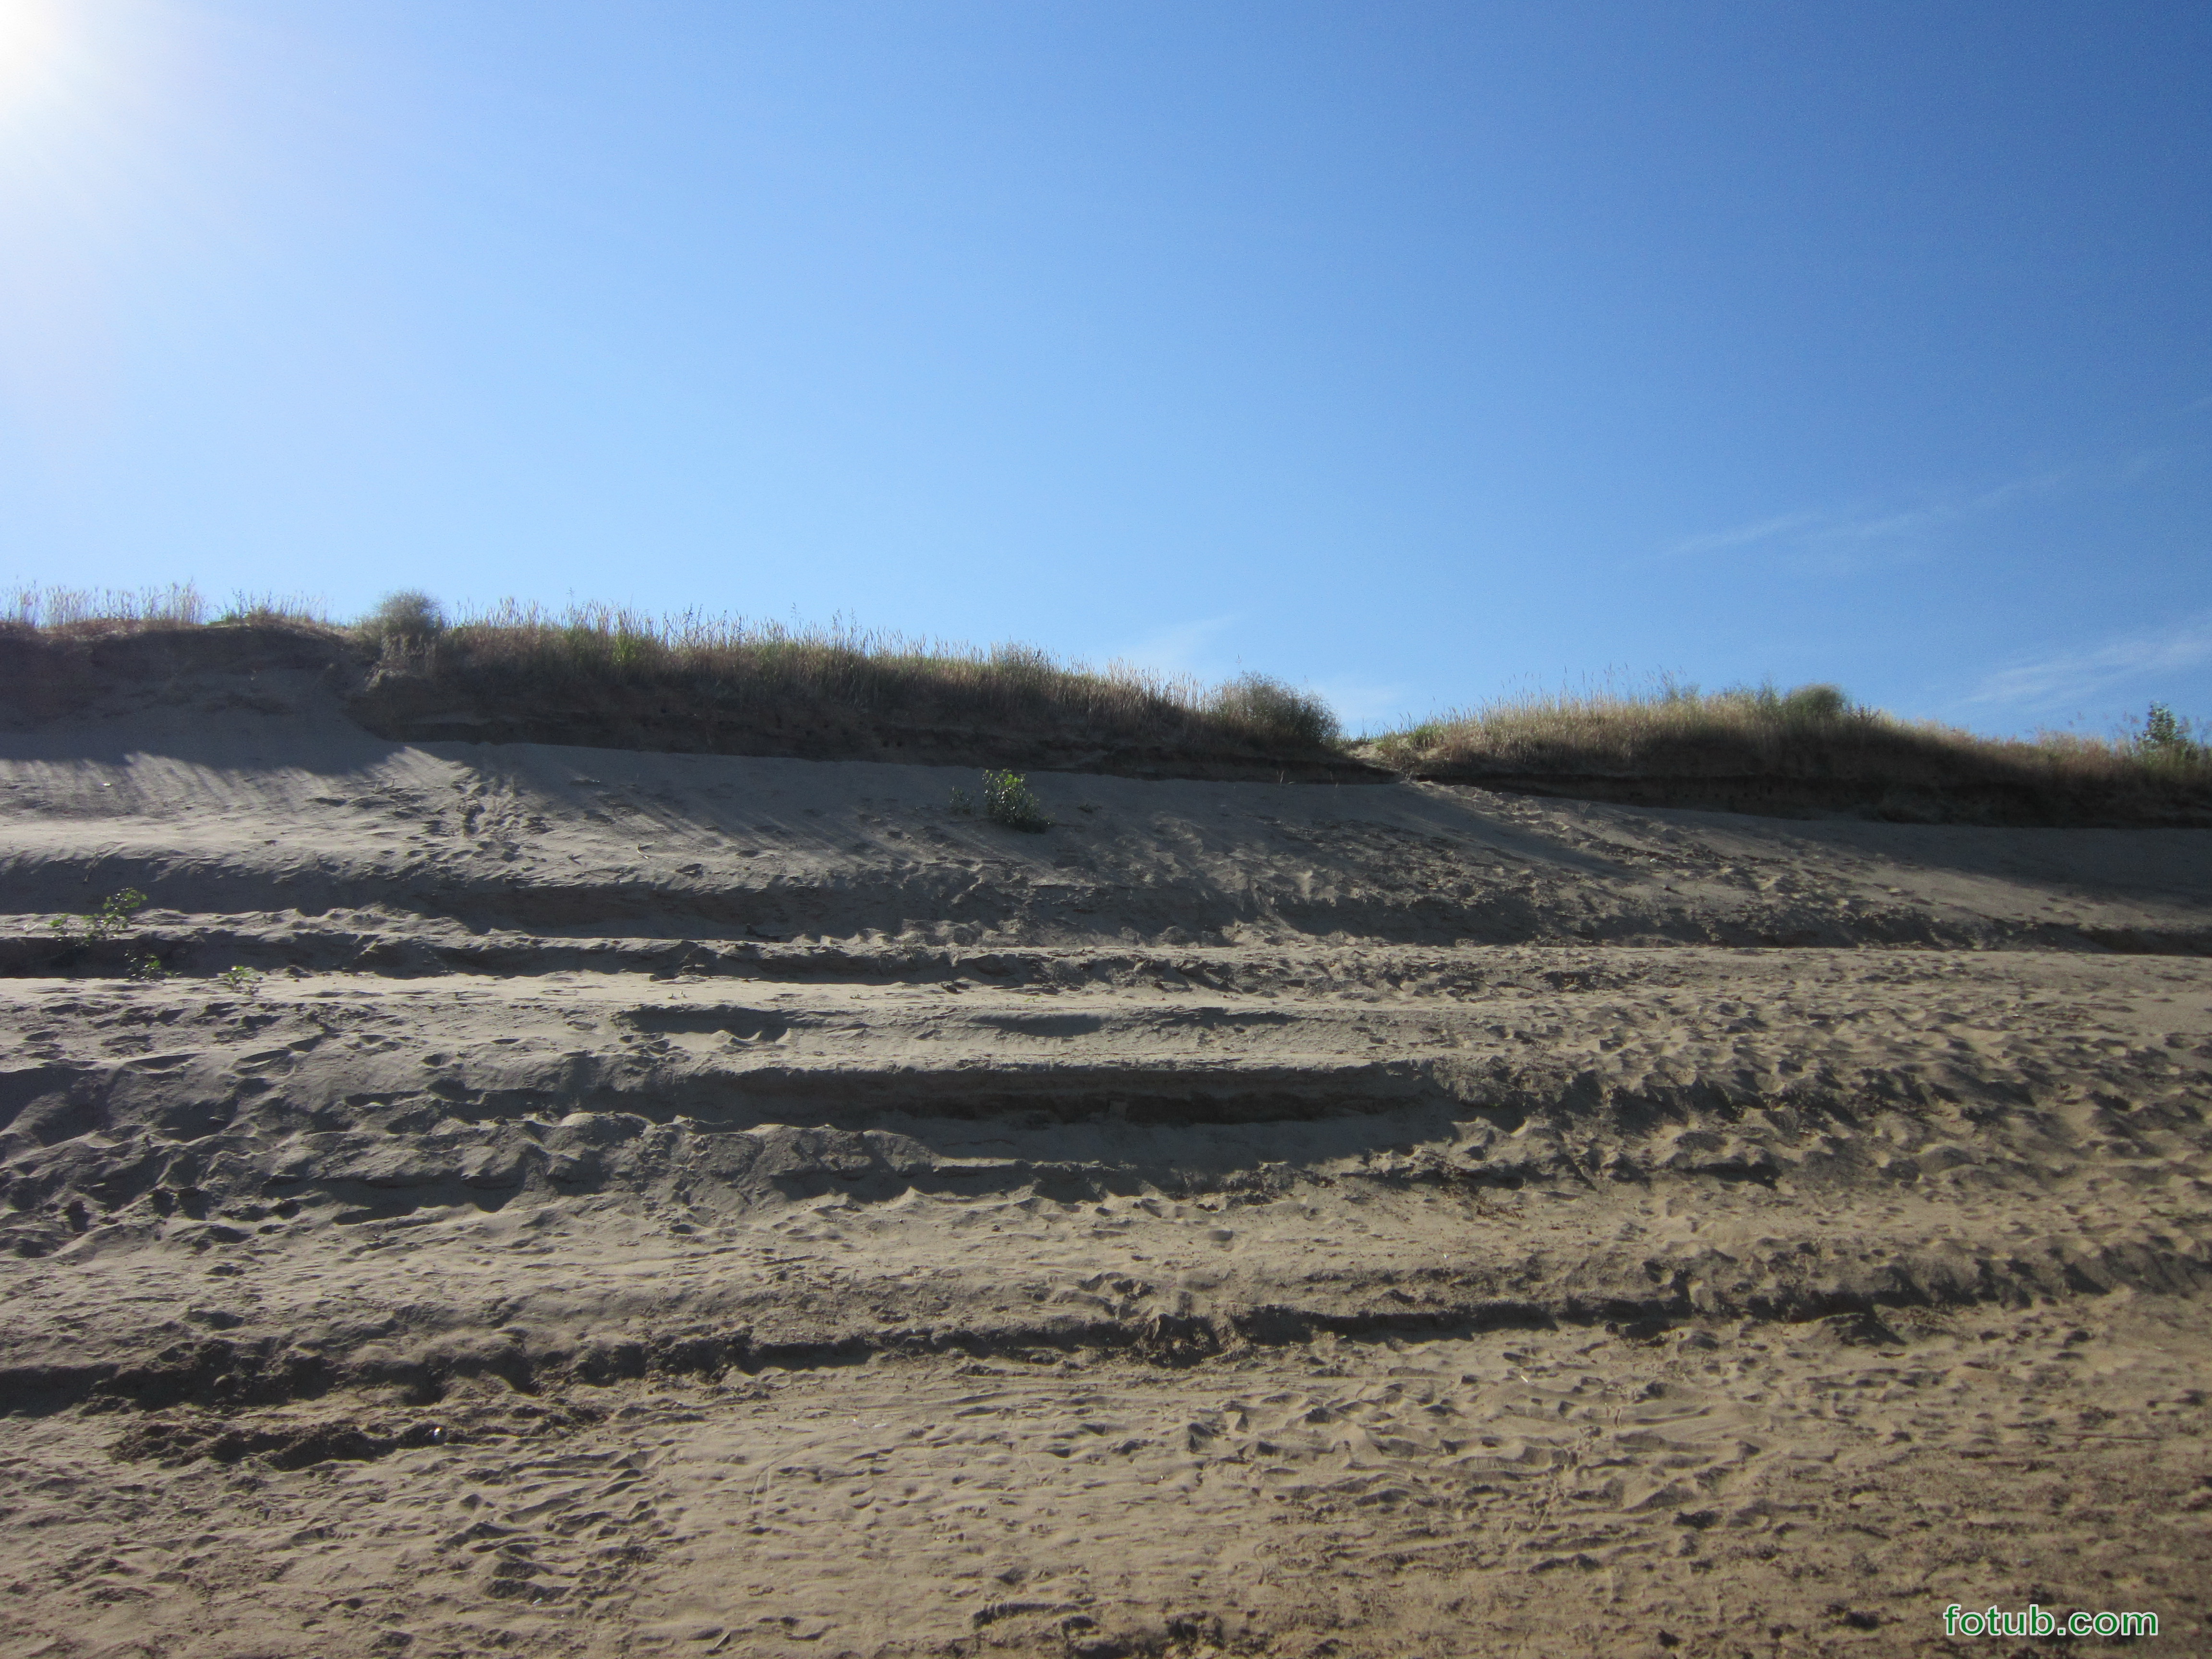 Песчаный берег торжественно вручить. Покажи Сабаево песчаный берег. Песчаный берег желанный друг. Гаечный берег и песчаный берега разница фото. Песчаные обрывистые берега на озере осень.